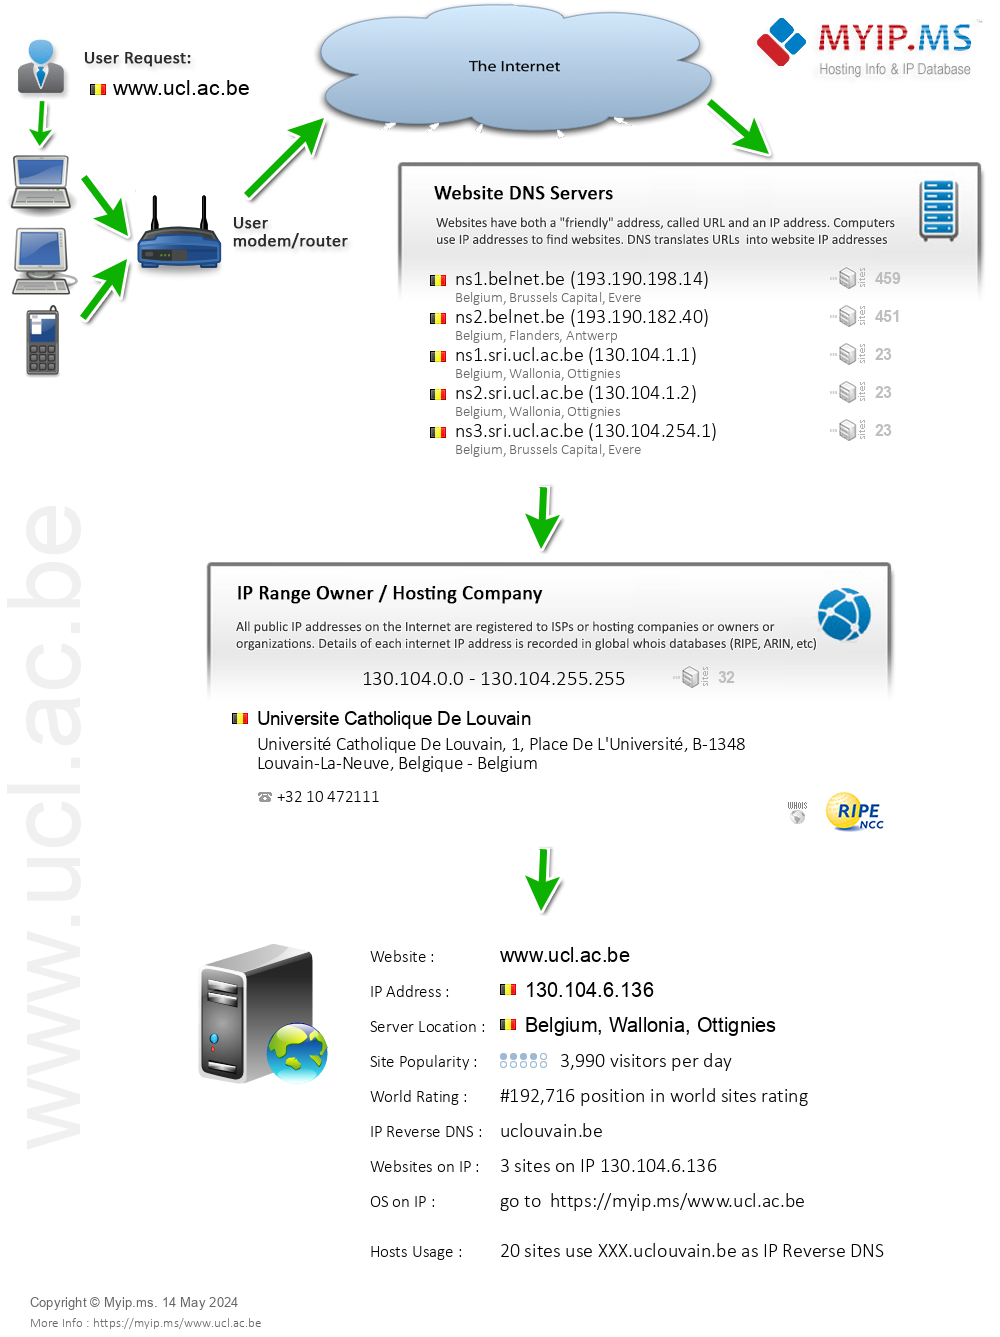 Ucl.ac.be - Website Hosting Visual IP Diagram